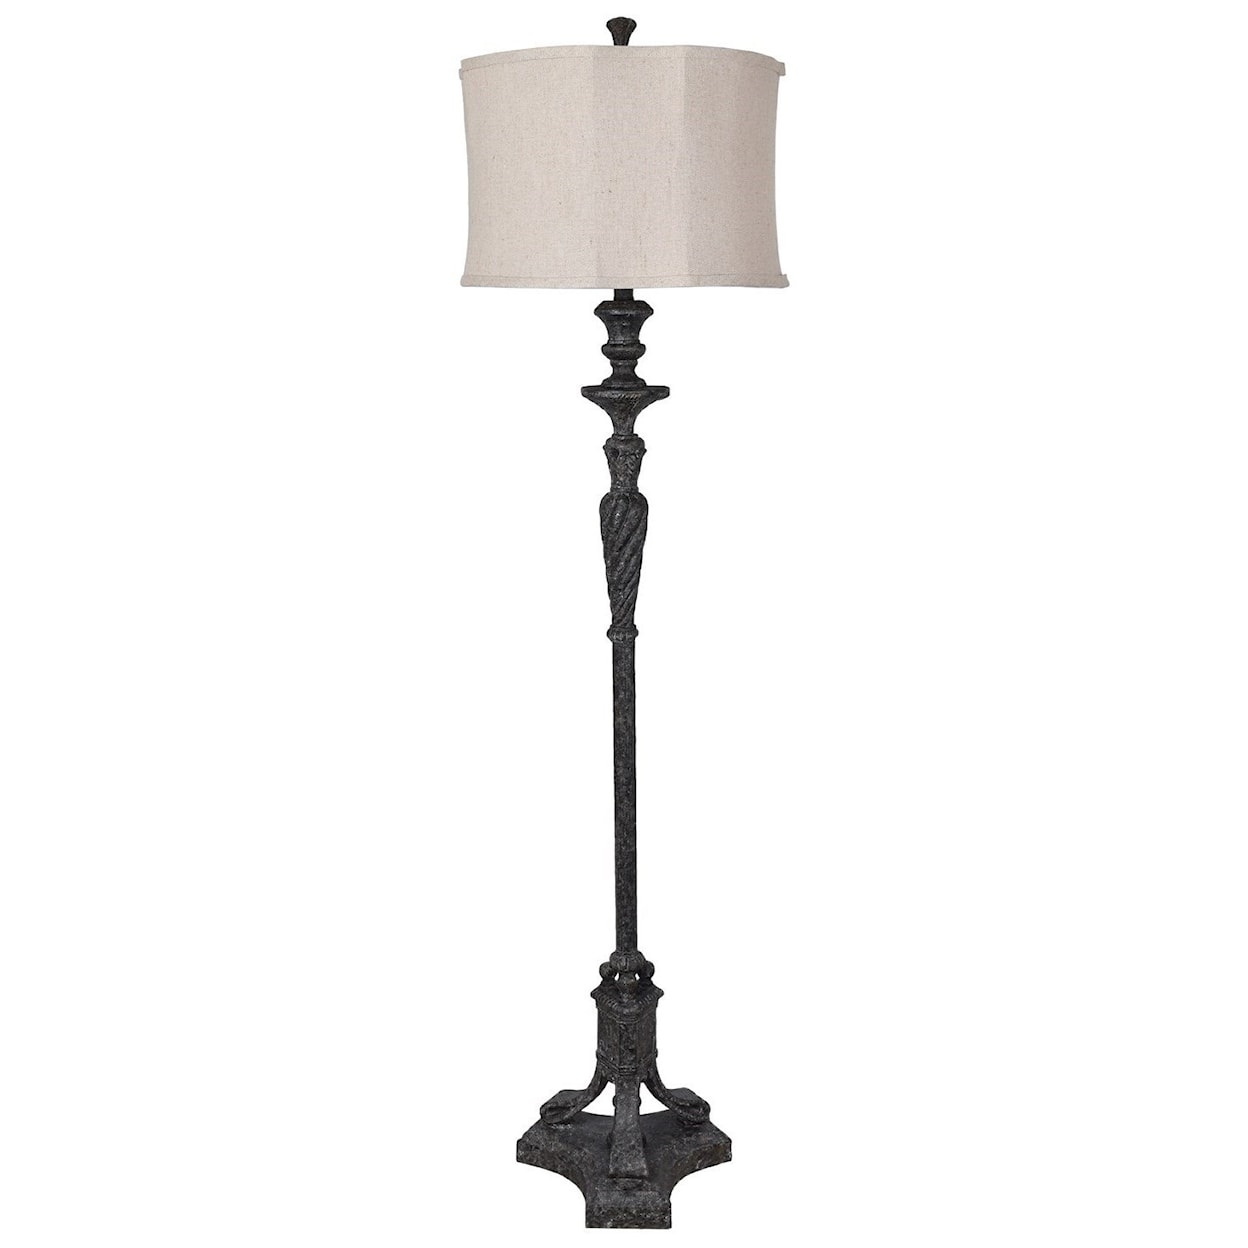 Crestview Collection Lighting Castilian Floor Lamp